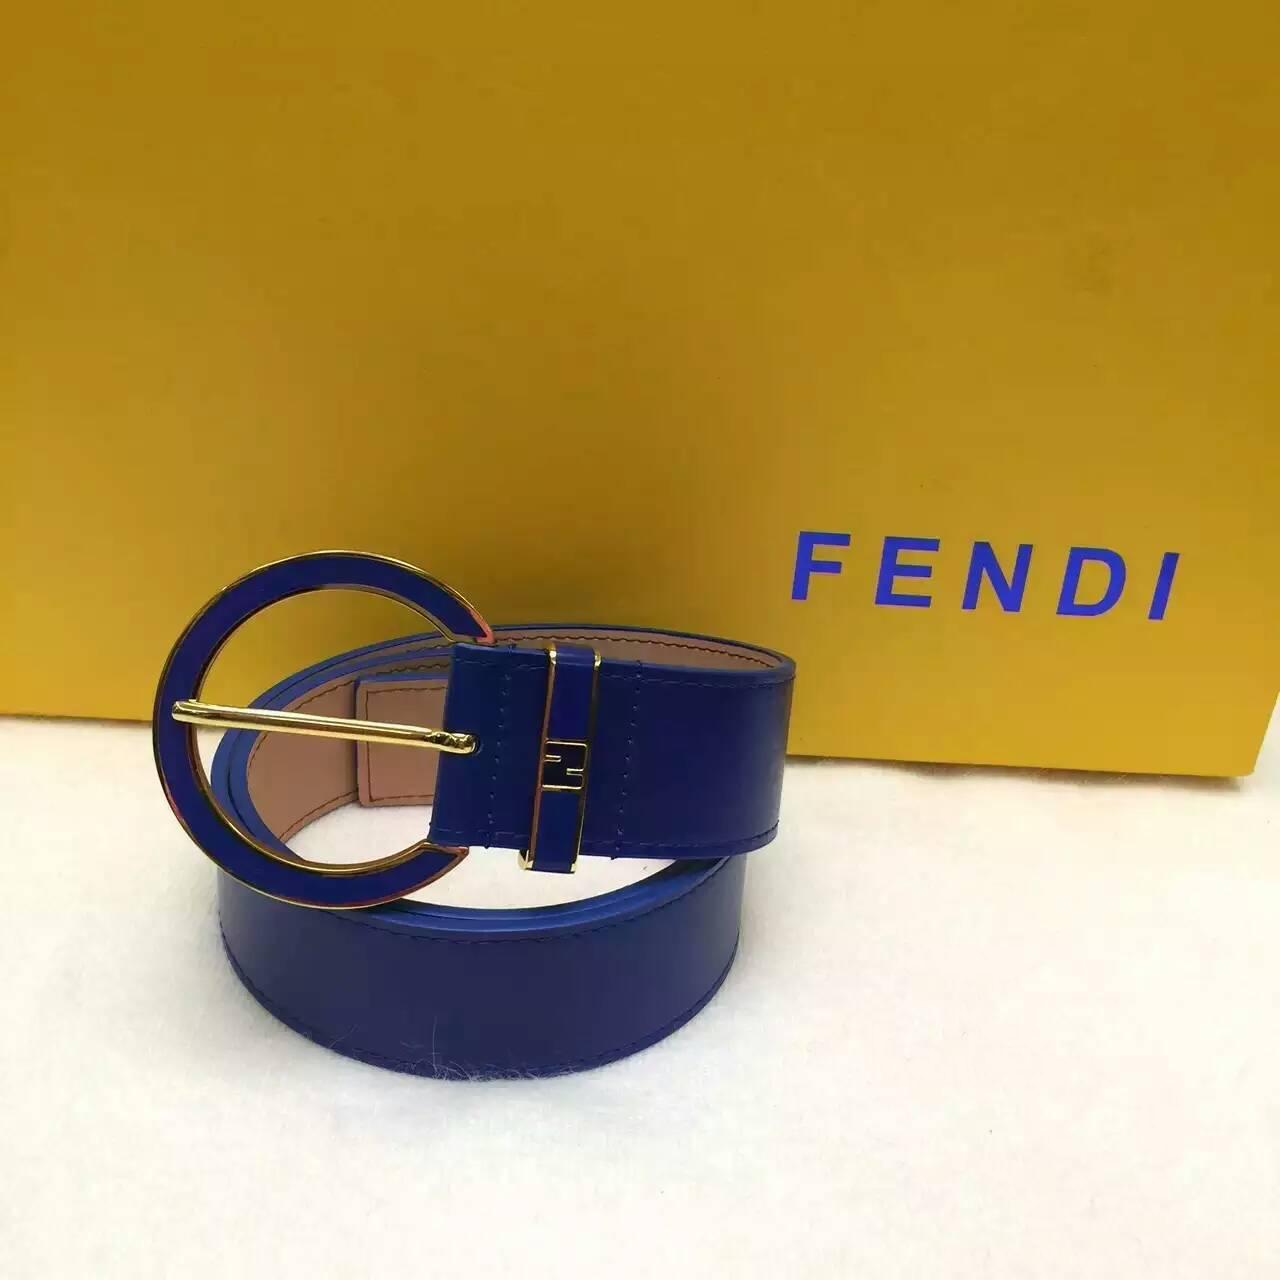 フェンディコピー ベルト 2016春夏新作 FENDI ファッション レディース ベルト fdbelt1160522-3